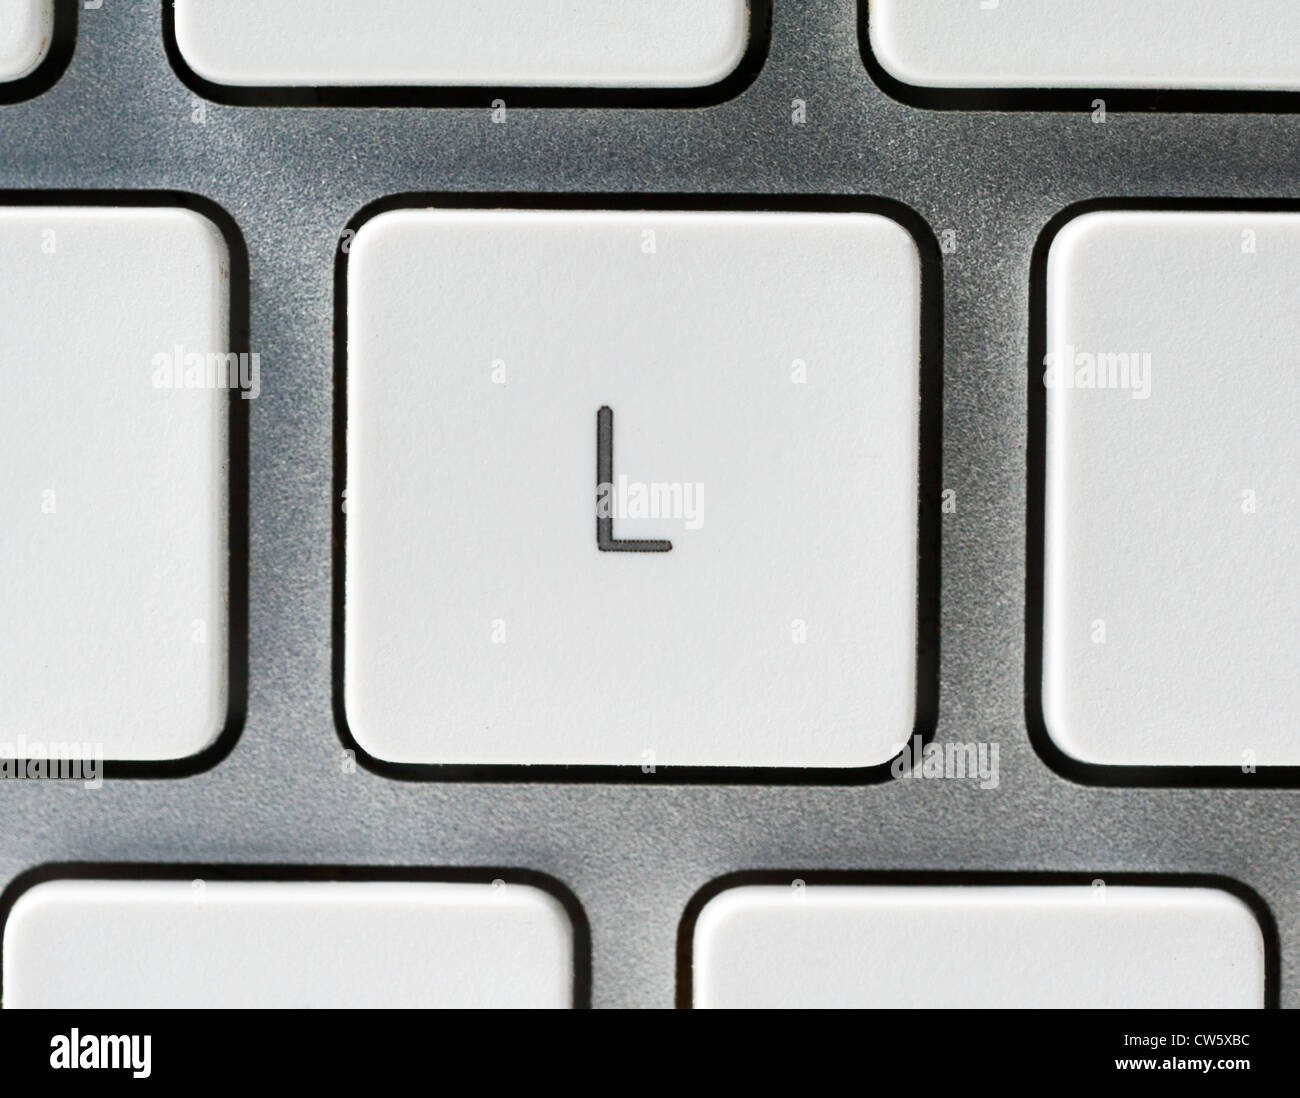 Buchstabe L auf einer Apple-Tastatur Stockfoto